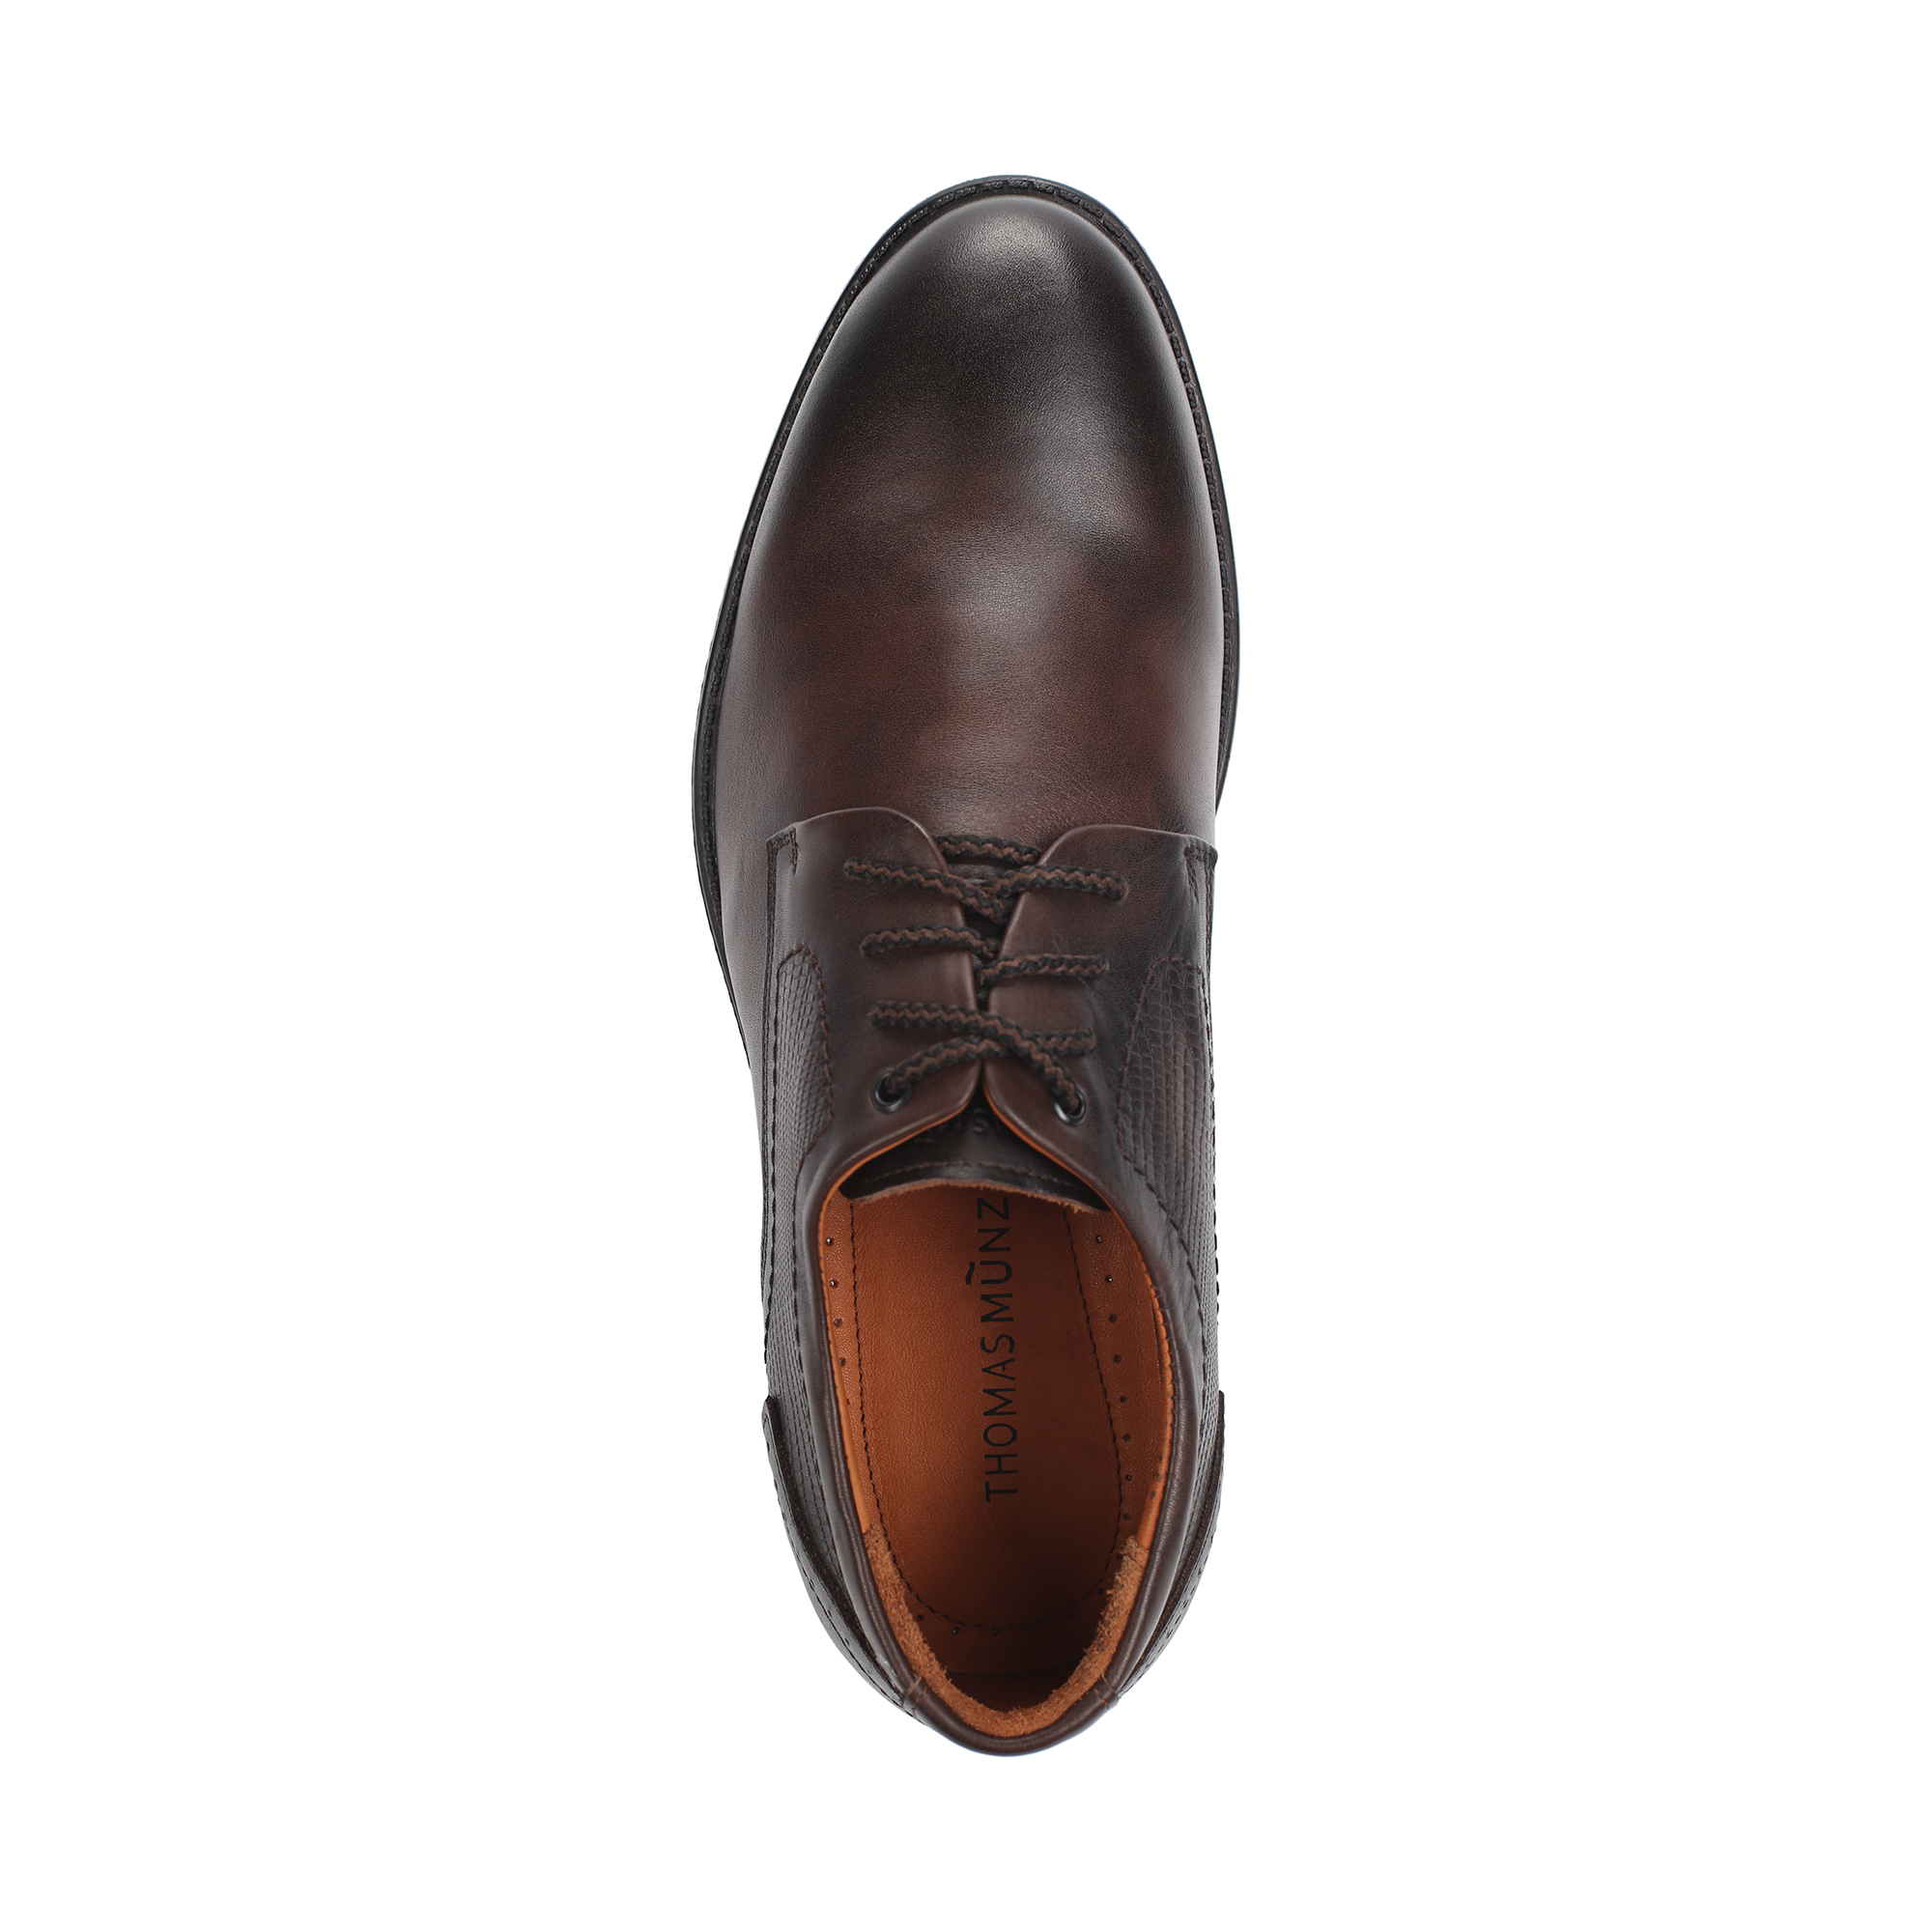 Туфли/полуботинки Thomas Munz 306-014B-1109, цвет коричневый, размер 41 - фото 5